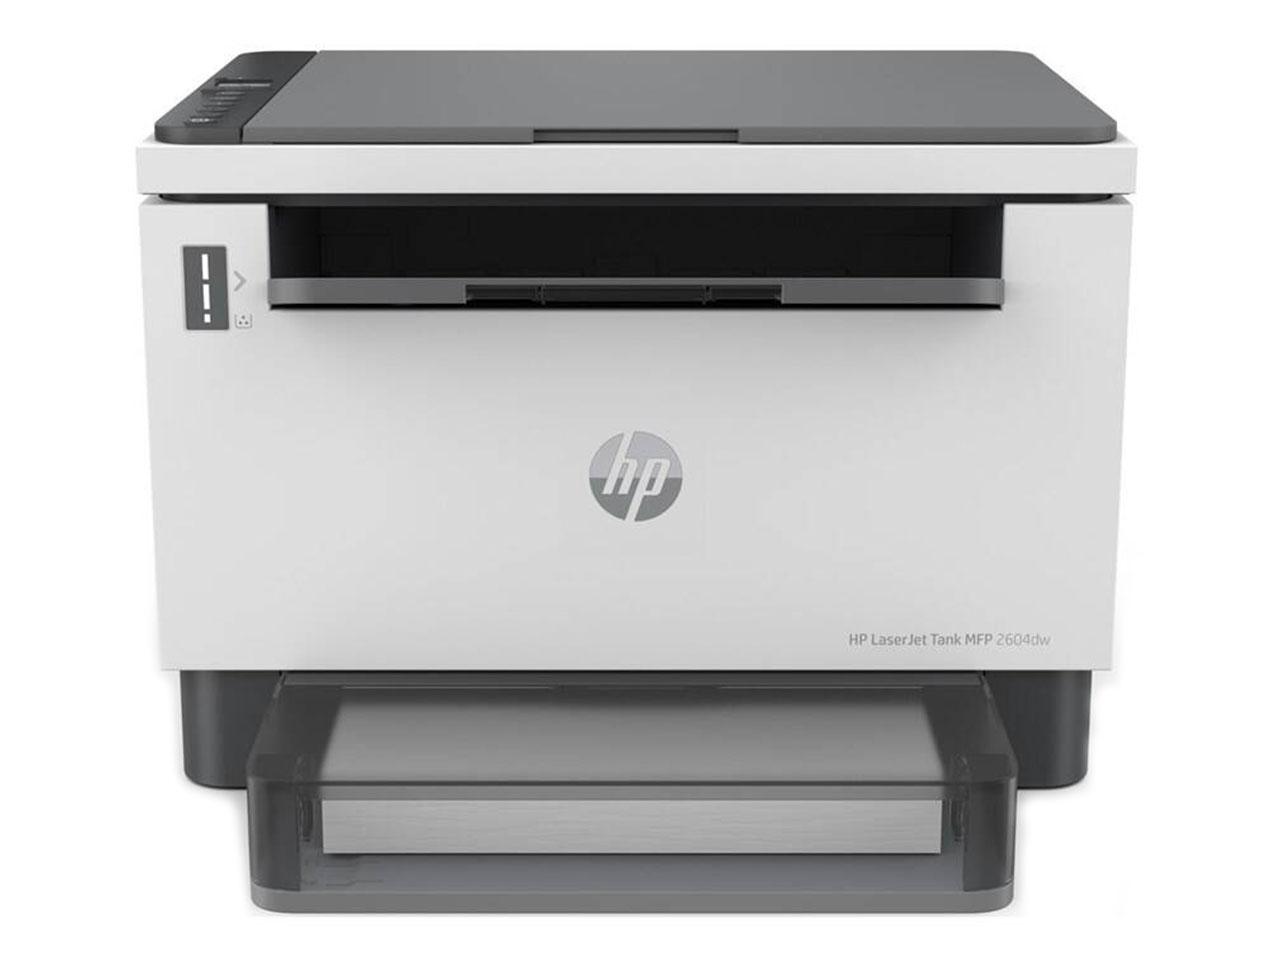 Multifunkční tiskárna HP LaserJet Tank 2604dw (381V0A)